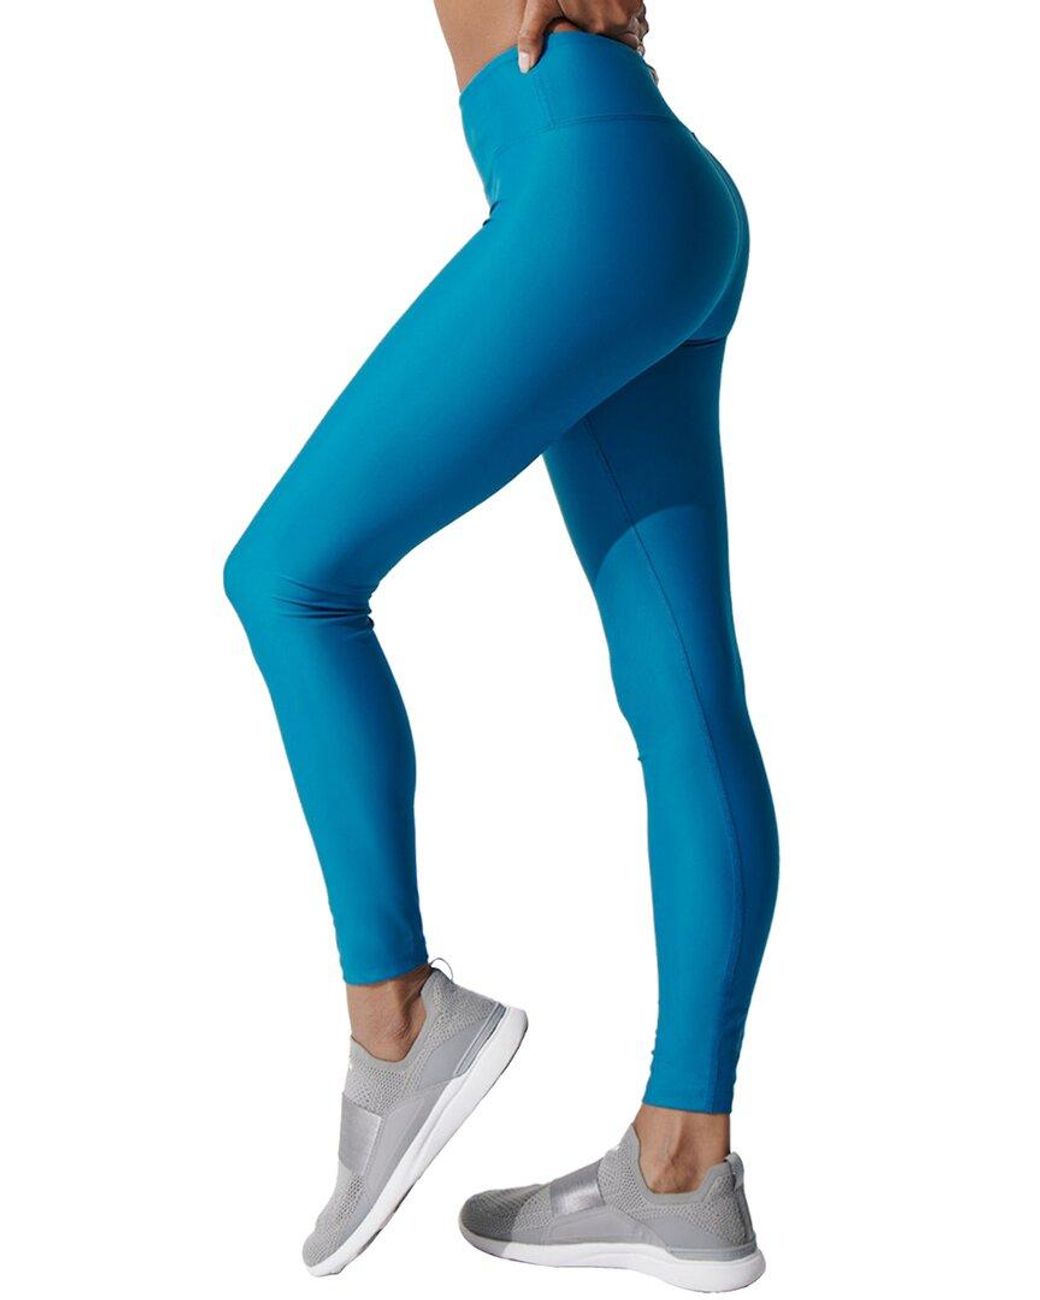 Heroine Sport Body Legging in Blue